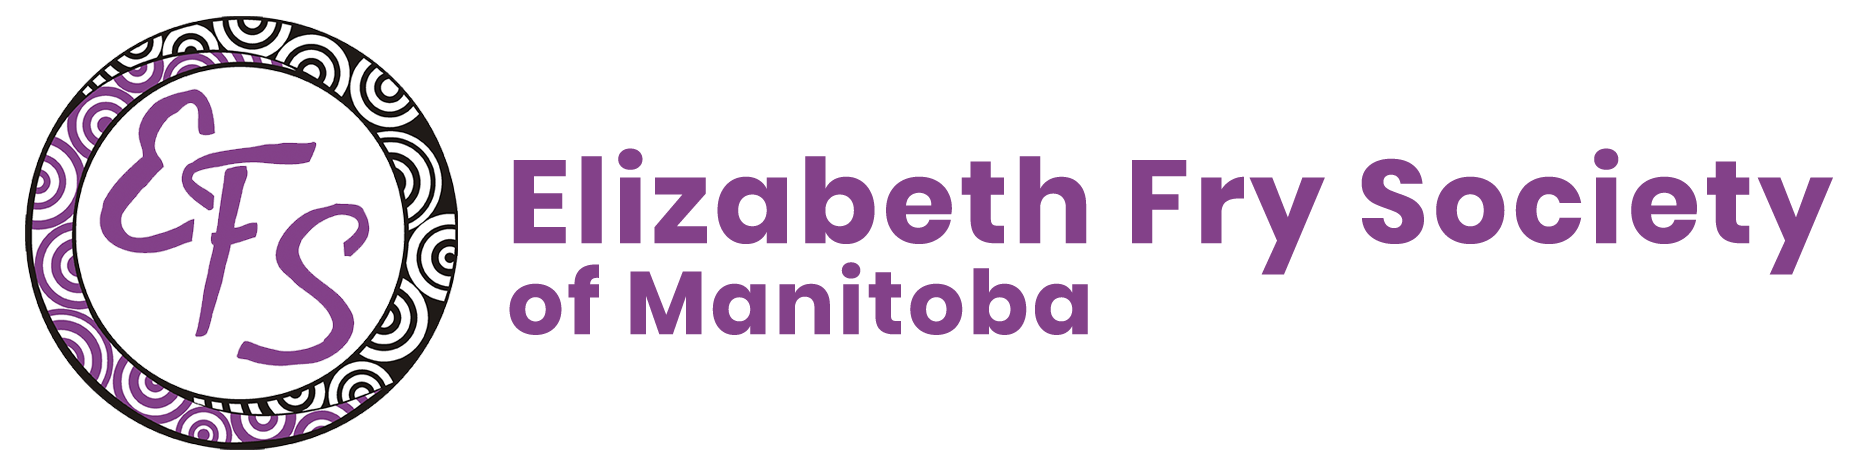 Community-Based Social Service | Elizabeth Fry Society Of Manitoba